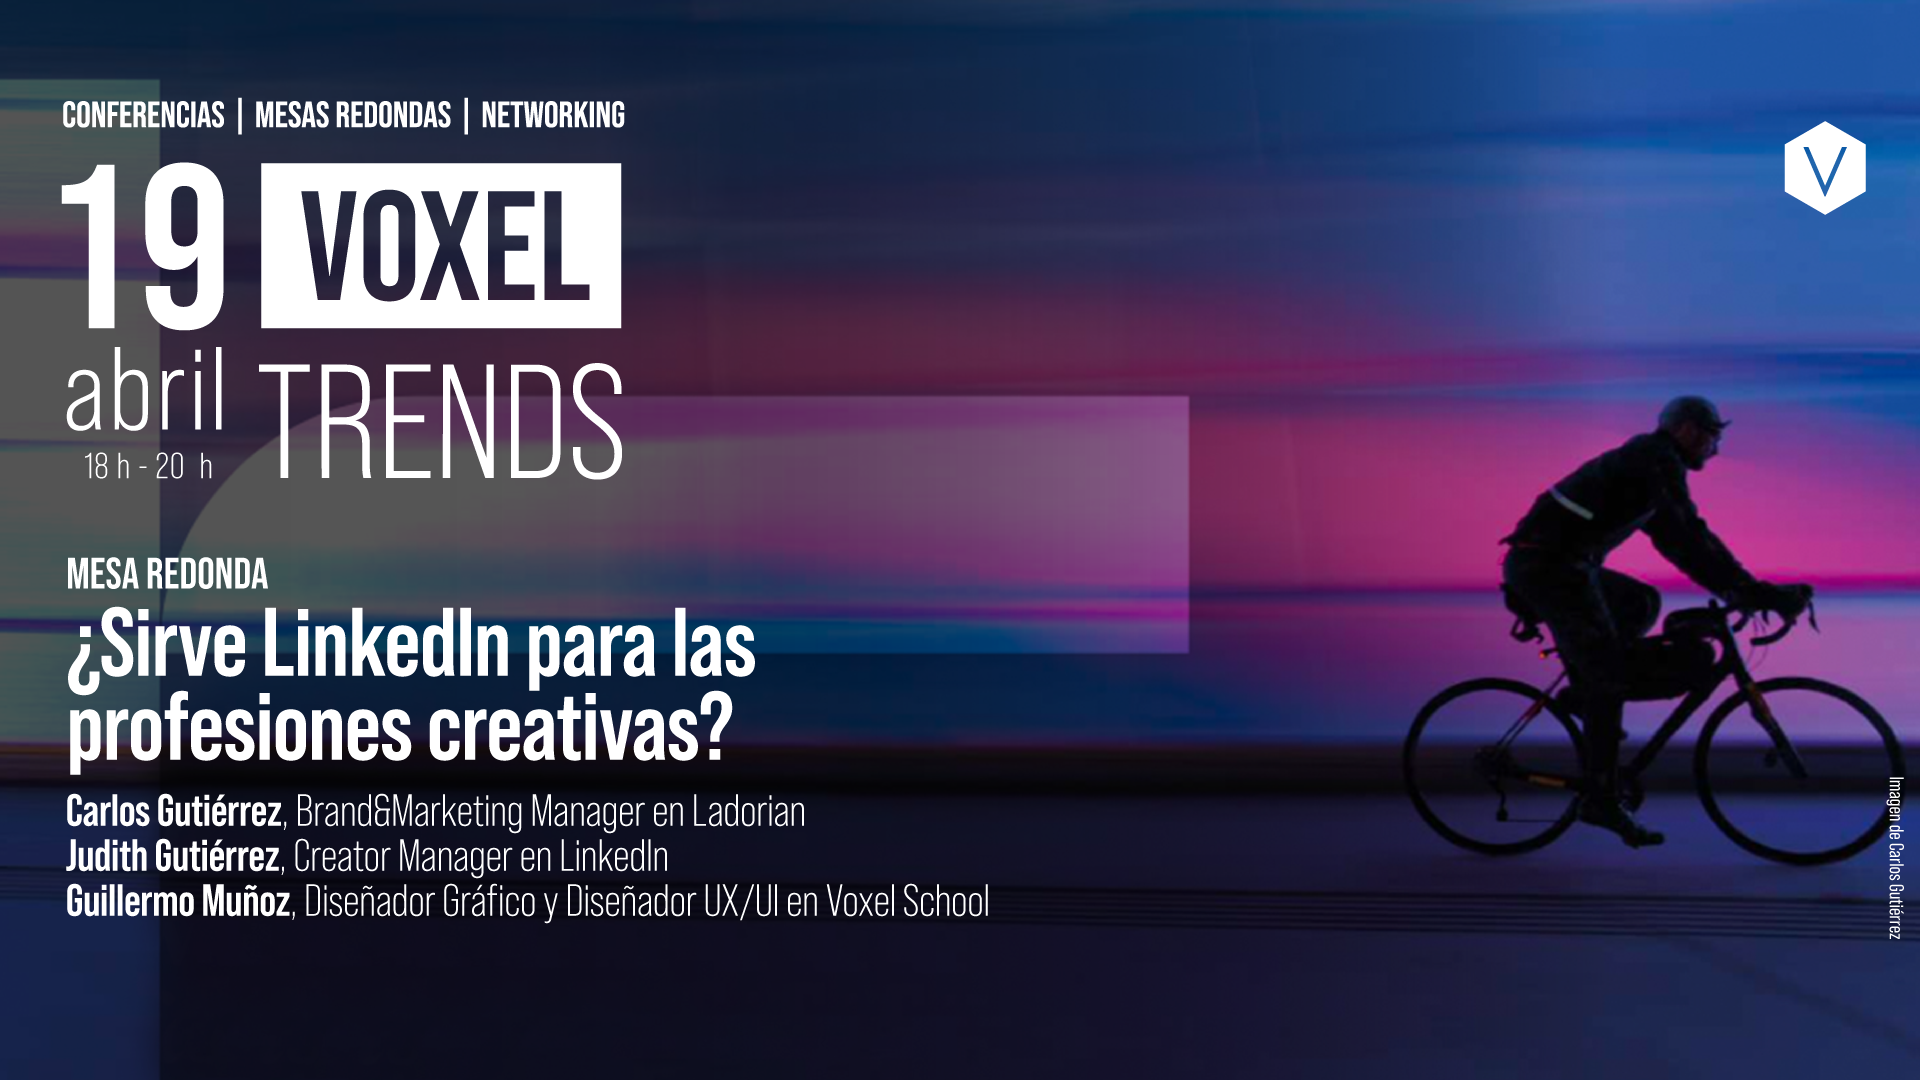 voxel_trends_19_abril_mesa_redonda_linkedin_3